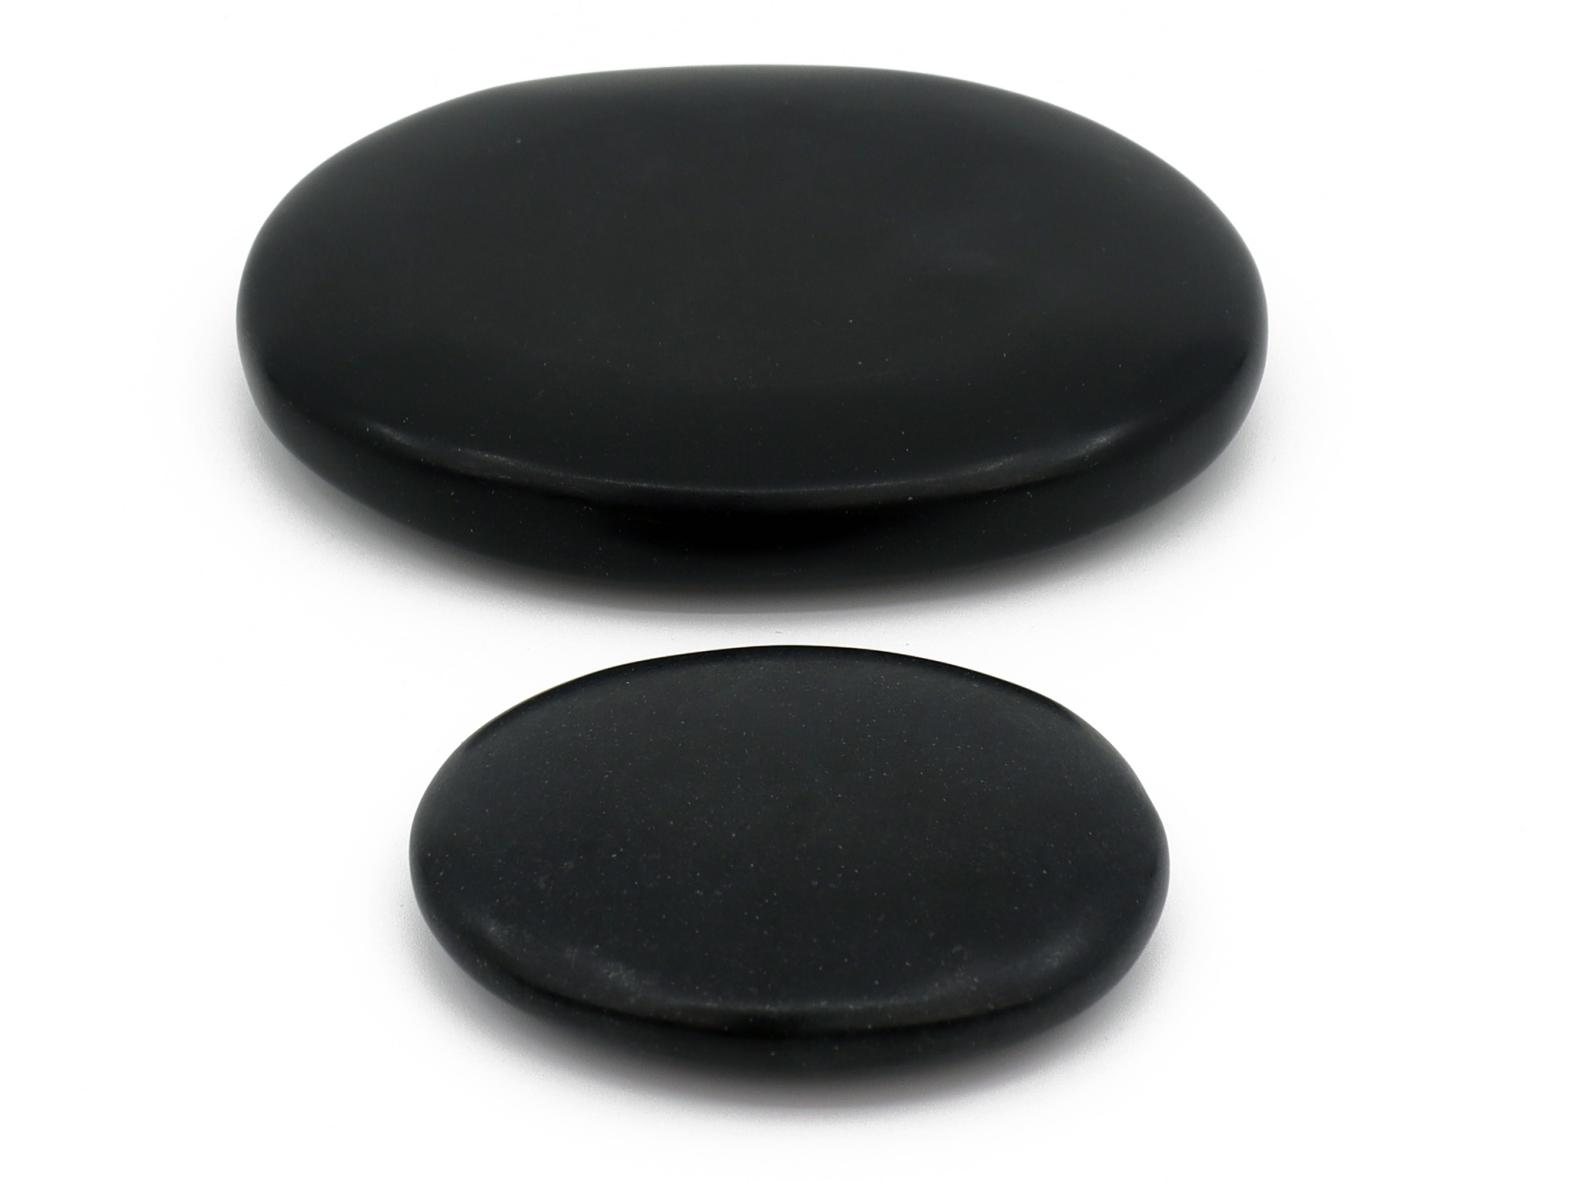 Hot Stone  - Echter Basalt Stein - Hot-Stone / Massagestein 60-70 mm oder 90-110 mm